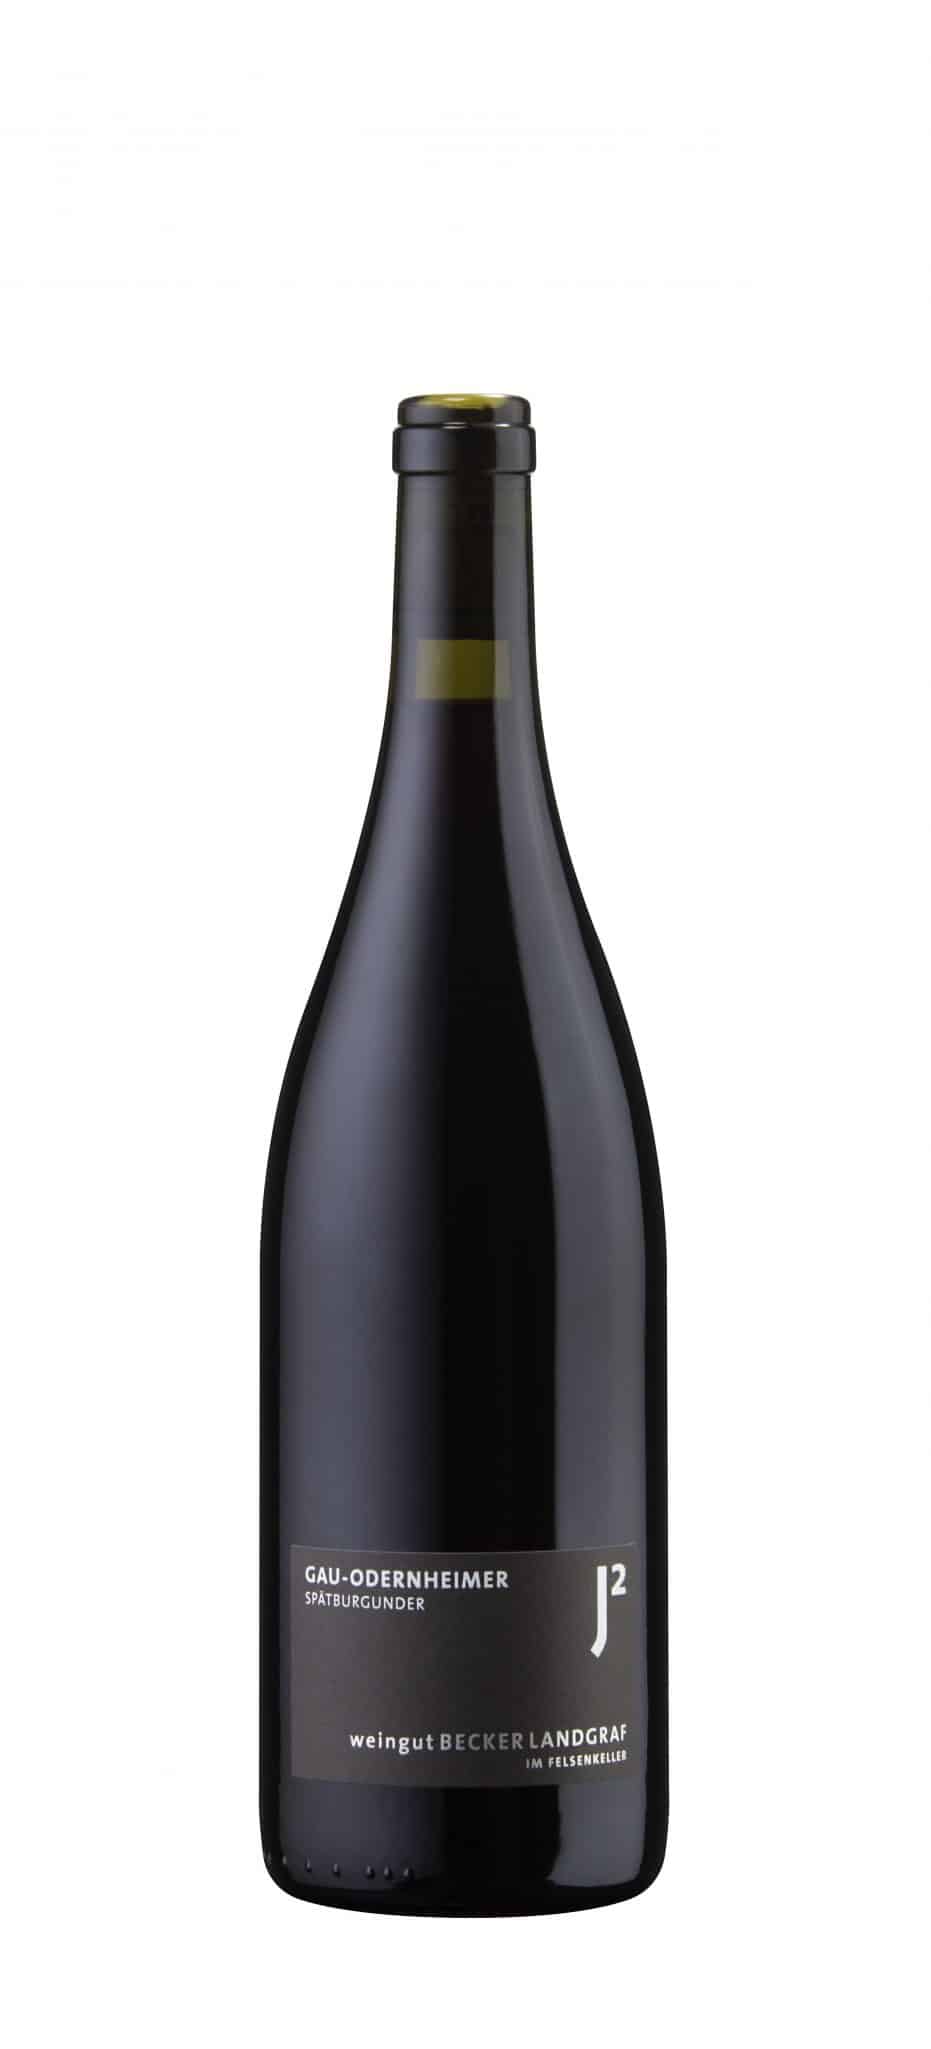 Becker Landgraf Gau-Odernheimer Pinot Noir 2020